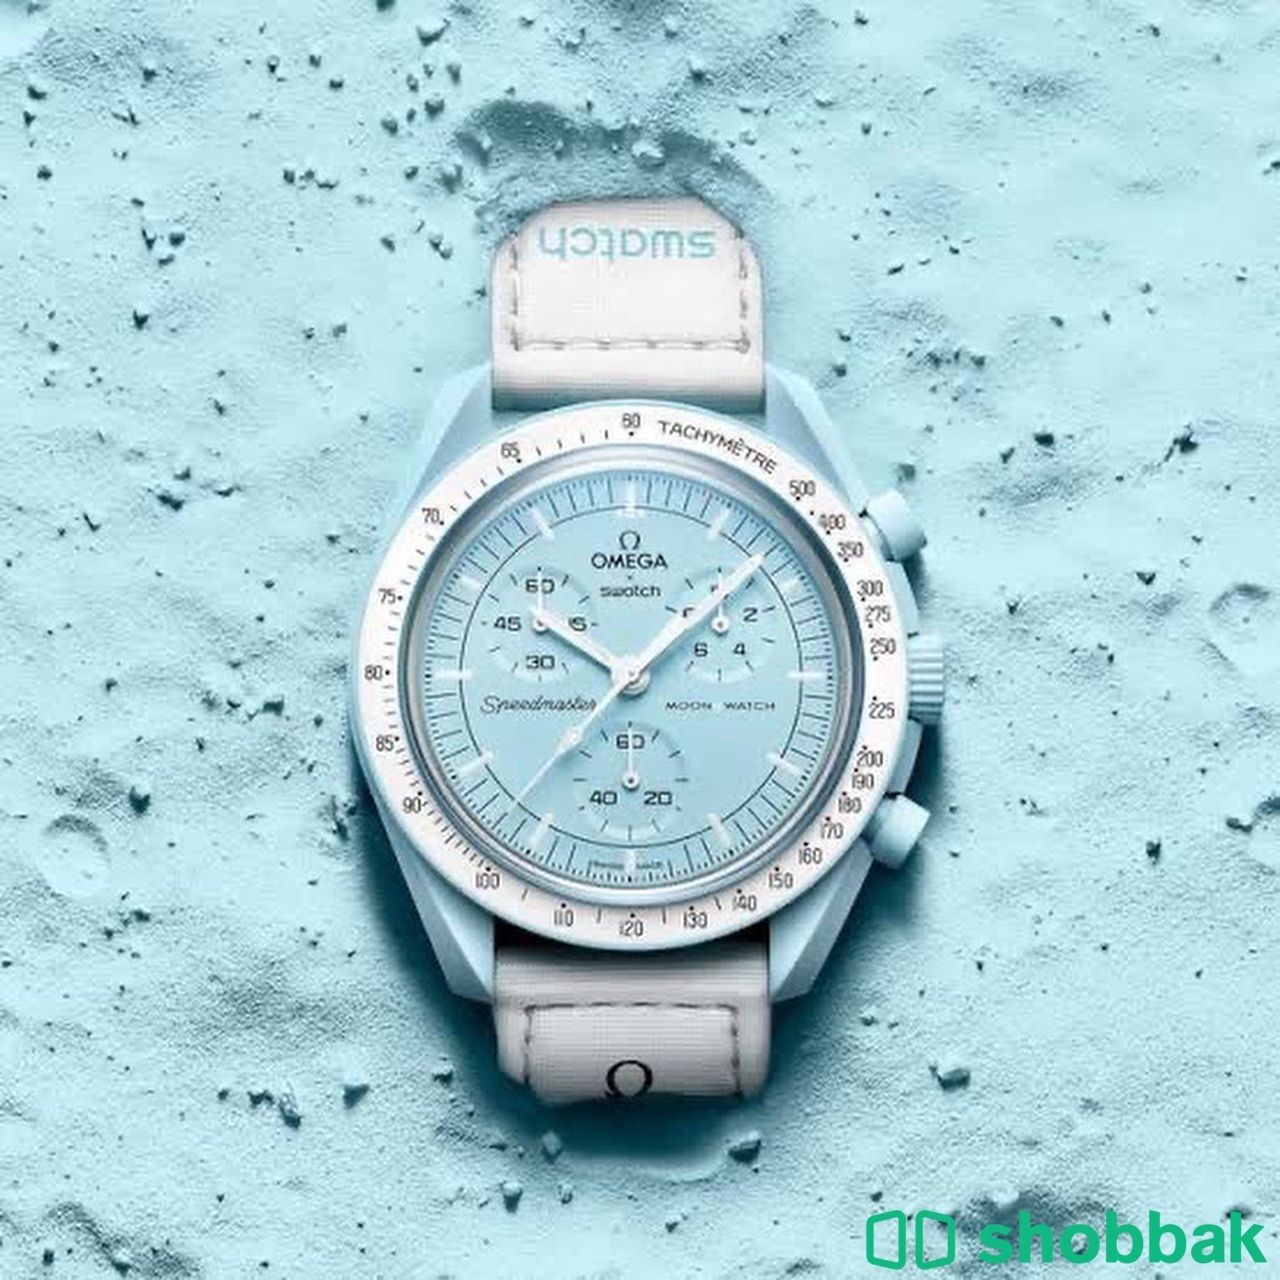 ساعات سواتش أوميجا Swatch X Omega جديدة Shobbak Saudi Arabia